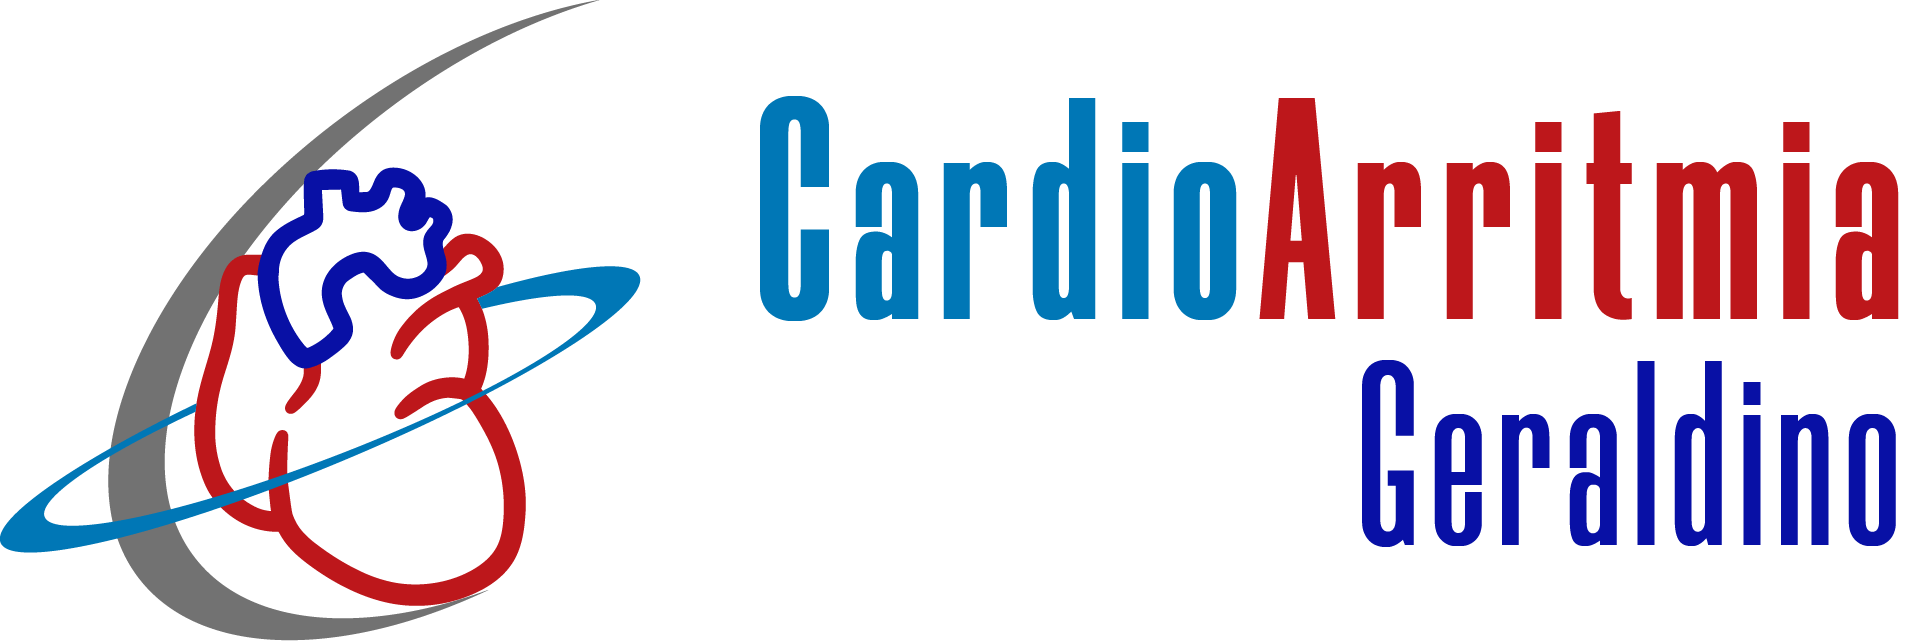 CardioArritmia Geraldino